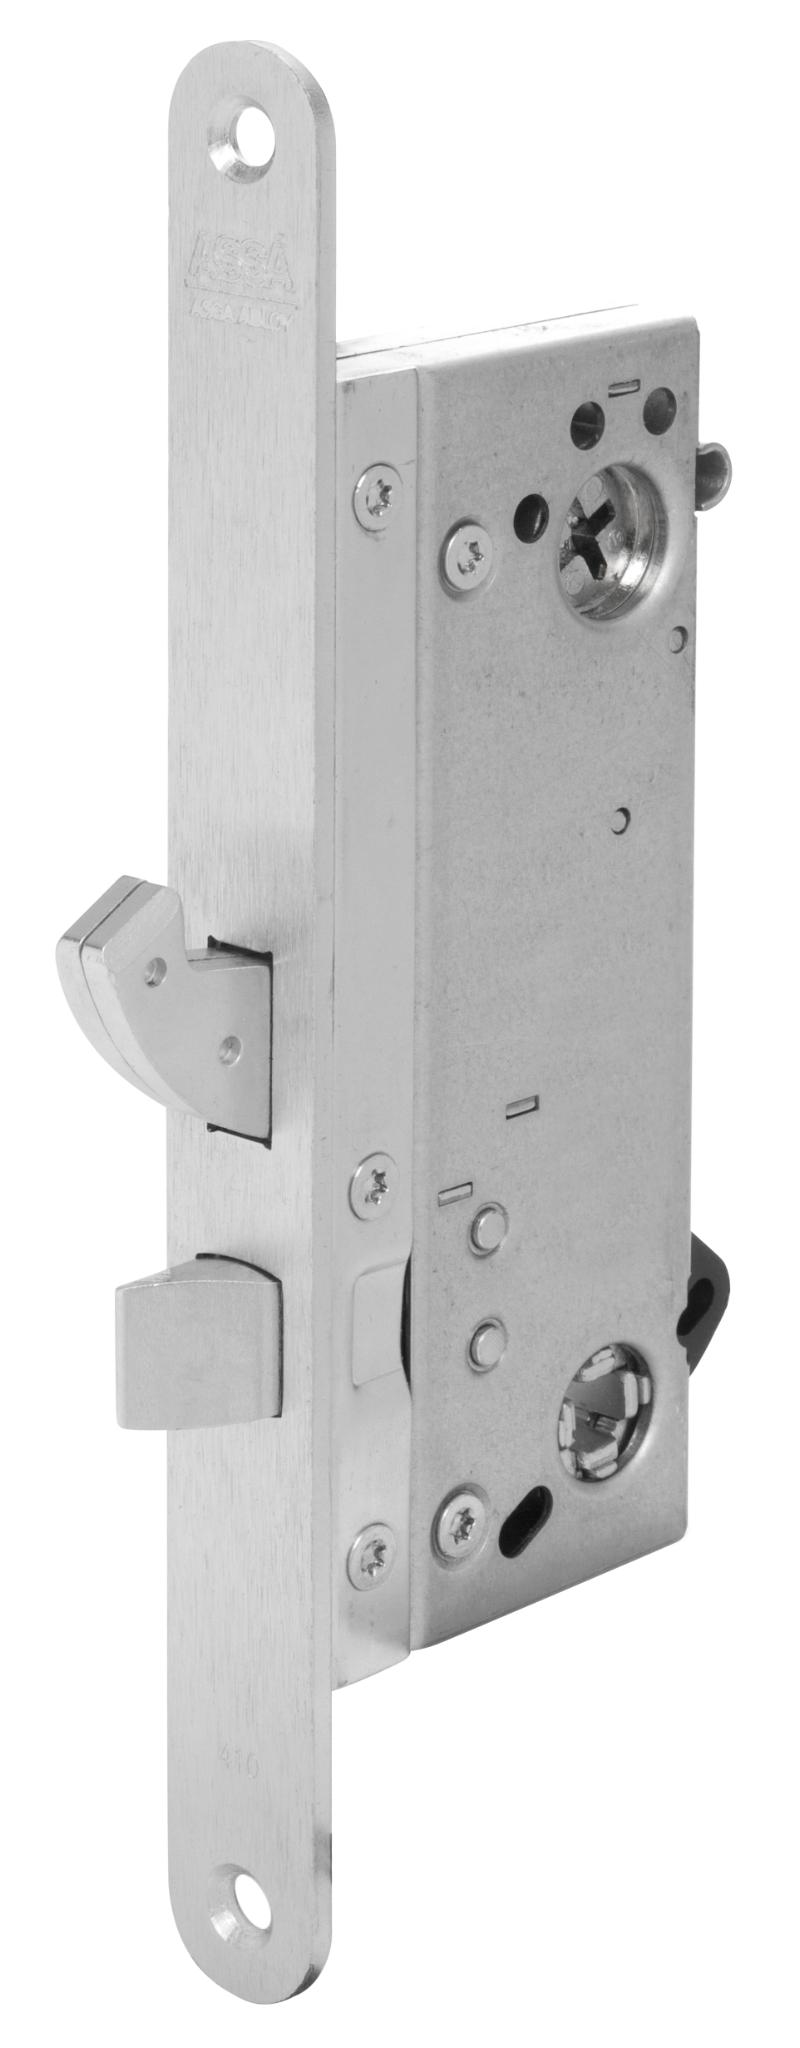 Assa låsbox Connect 410/50v omvänd. (968431)